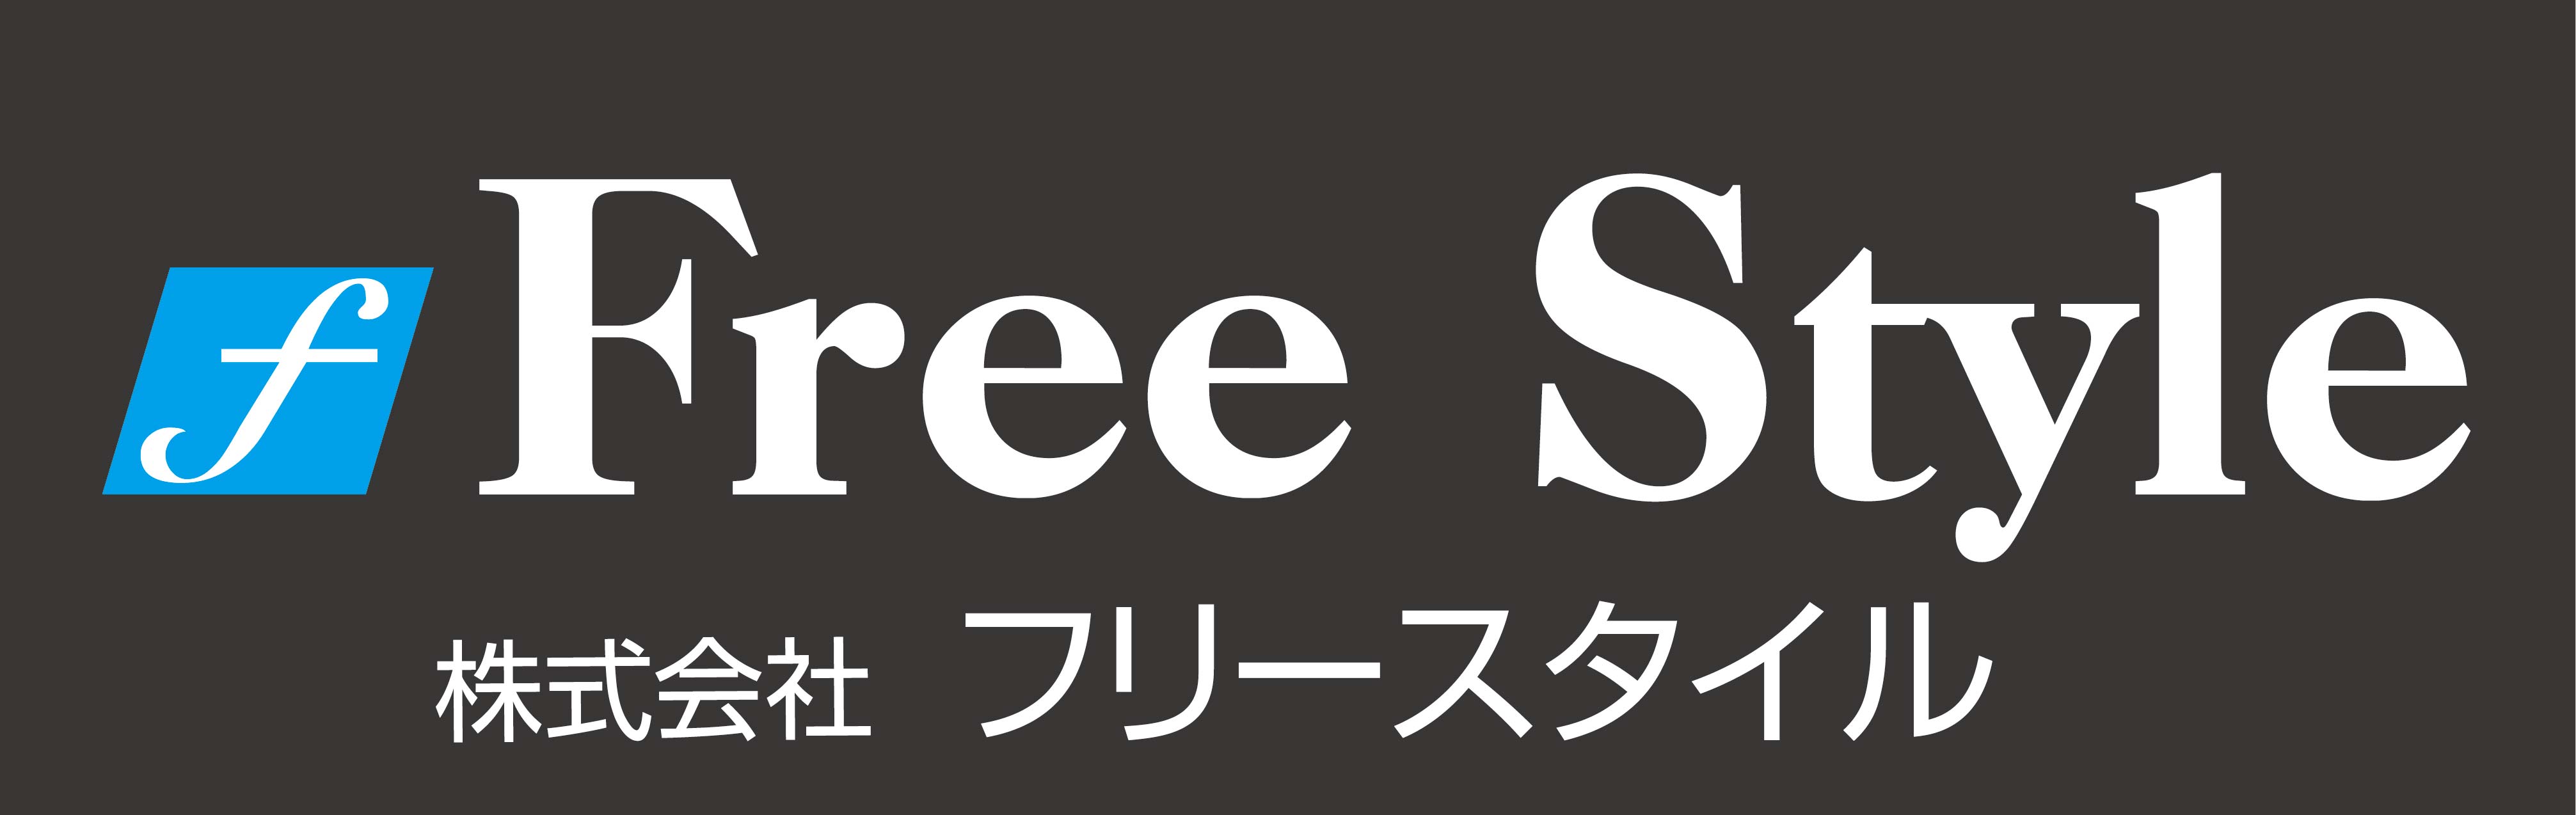 錦糸町バイト情報「FREE STYLE(フリースタイル)」あなたの夢を全力応援！